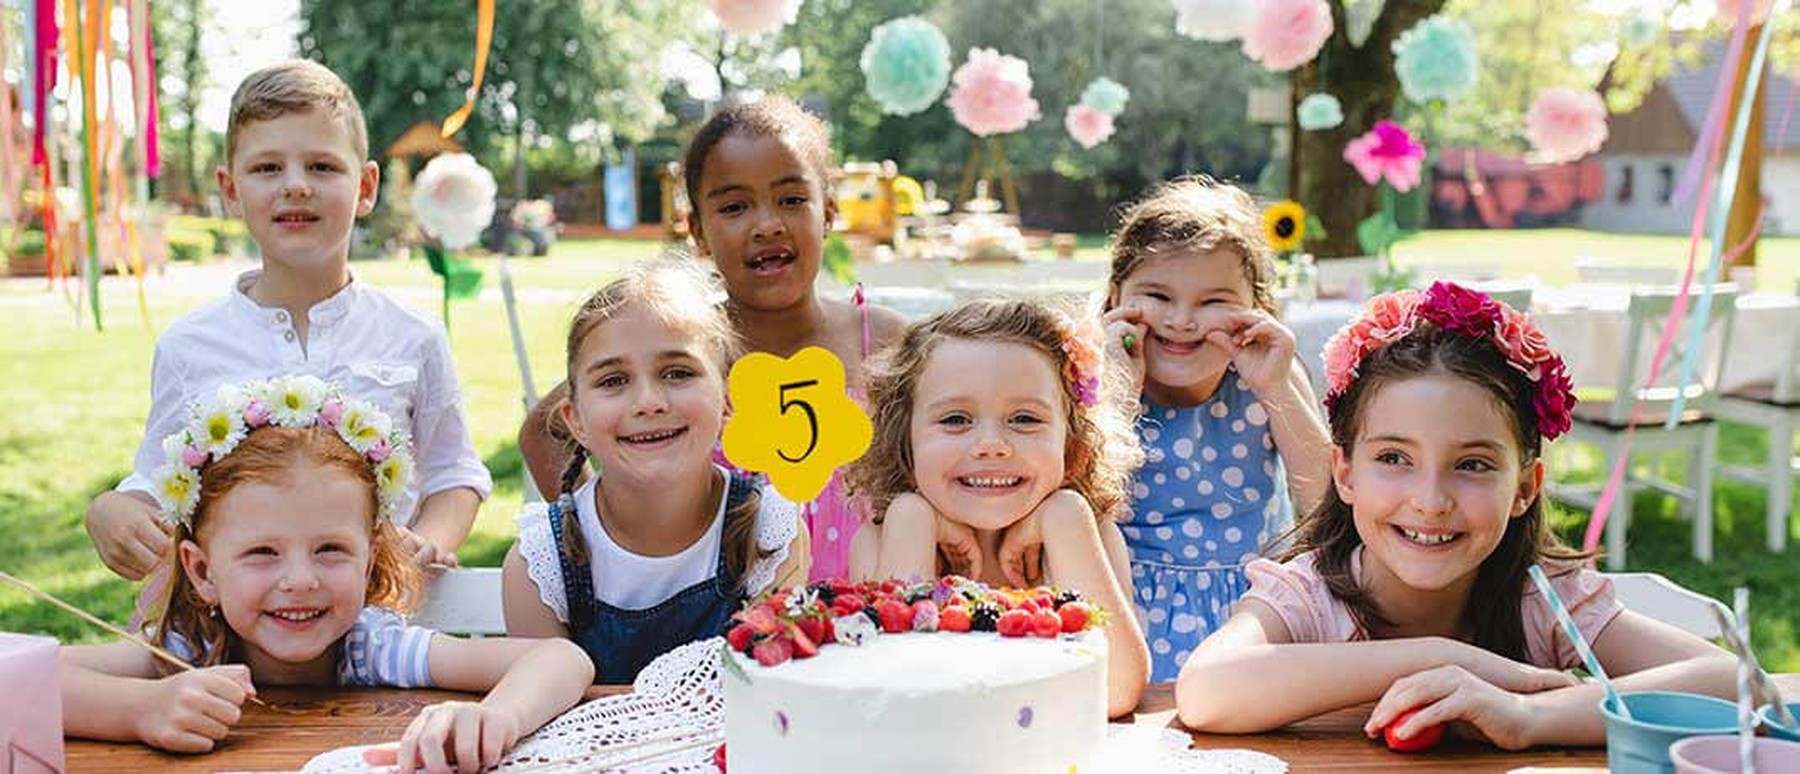 Vrolijke kinderen met taart op kinderfeestje